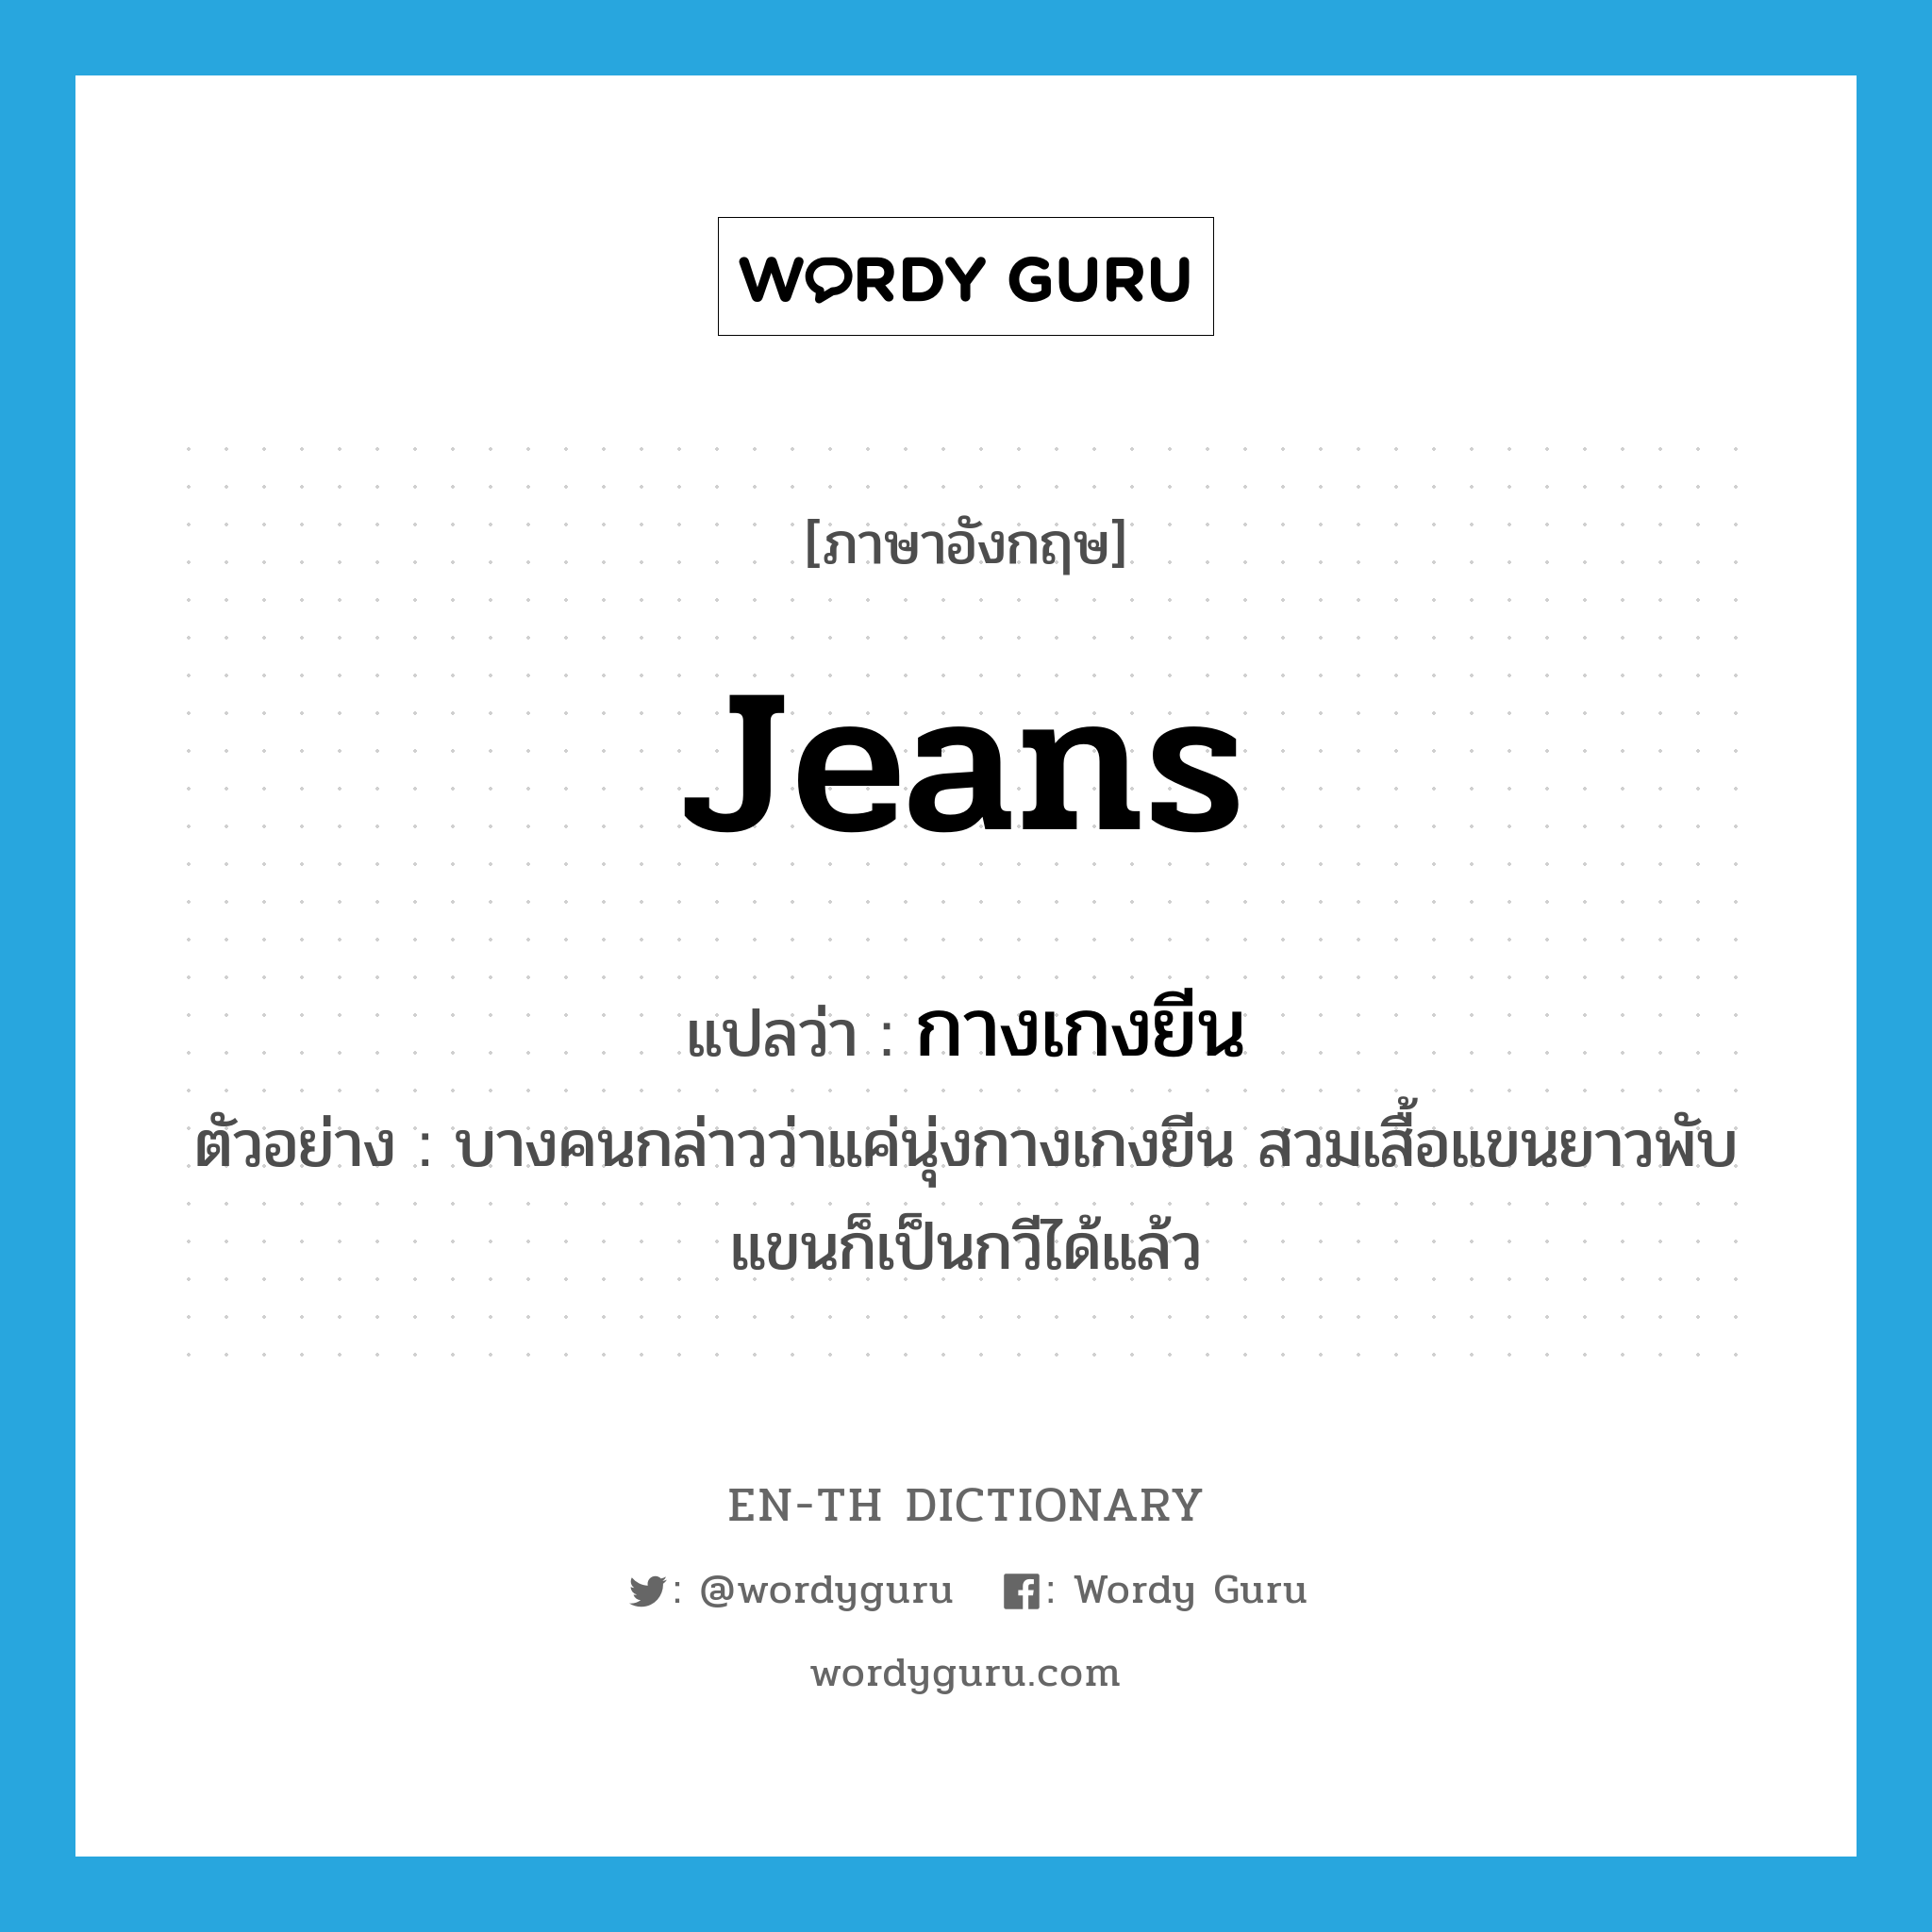 กางเกงยีน ภาษาอังกฤษ?, คำศัพท์ภาษาอังกฤษ กางเกงยีน แปลว่า jeans ประเภท N ตัวอย่าง บางคนกล่าวว่าแค่นุ่งกางเกงยีน สวมเสื้อแขนยาวพับแขนก็เป็นกวีได้แล้ว หมวด N